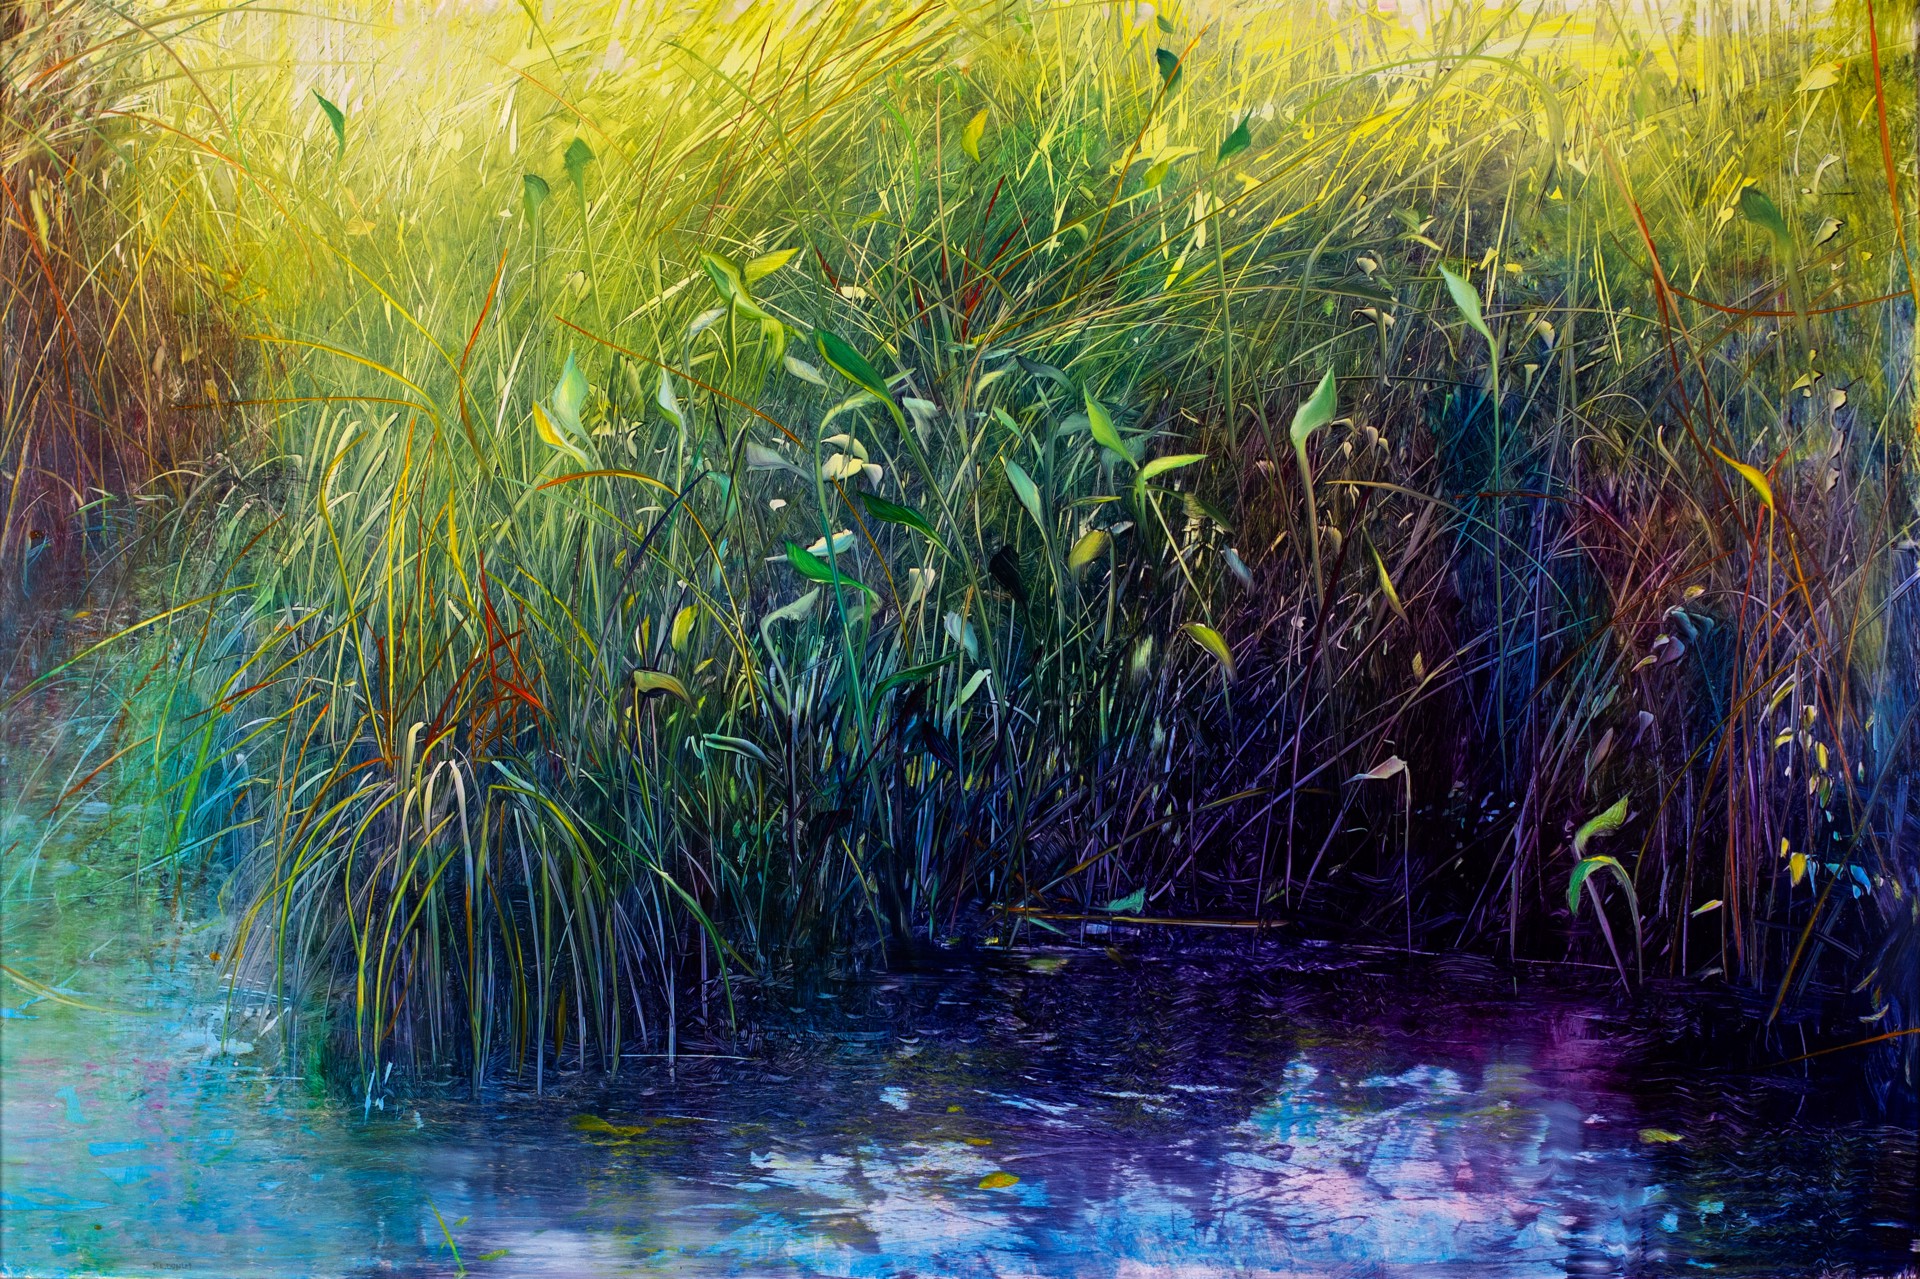 Pond Life by David Allen Dunlop